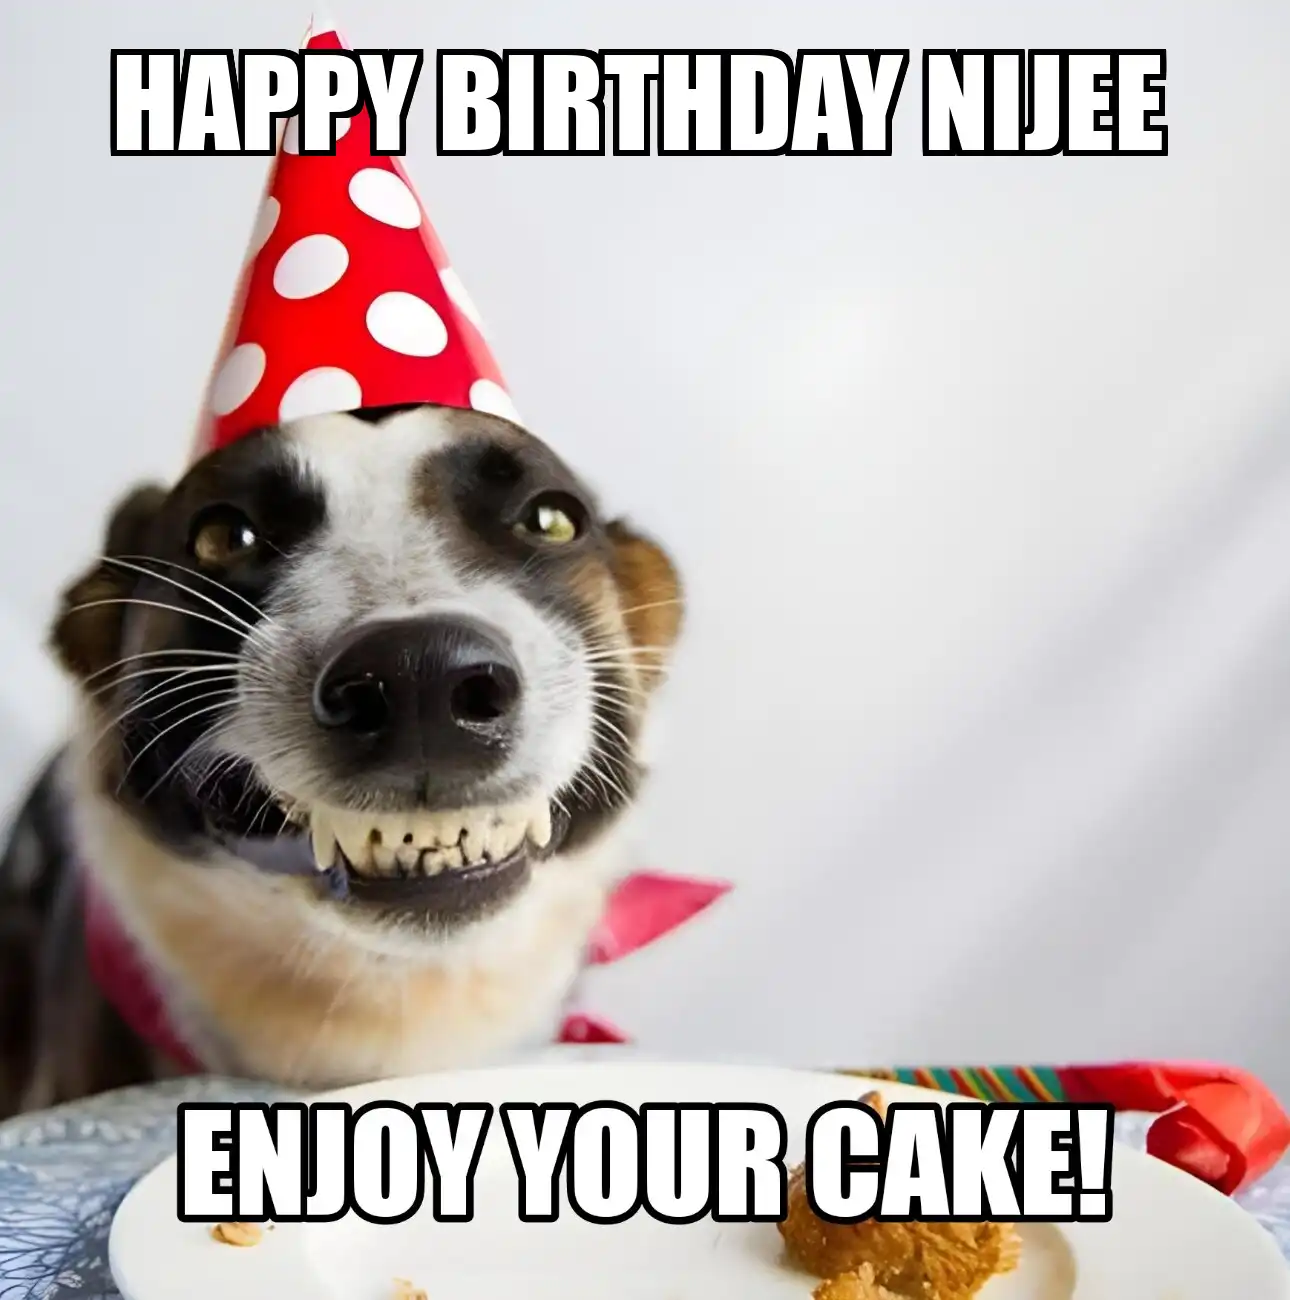 Happy Birthday Nijee Enjoy Your Cake Dog Meme